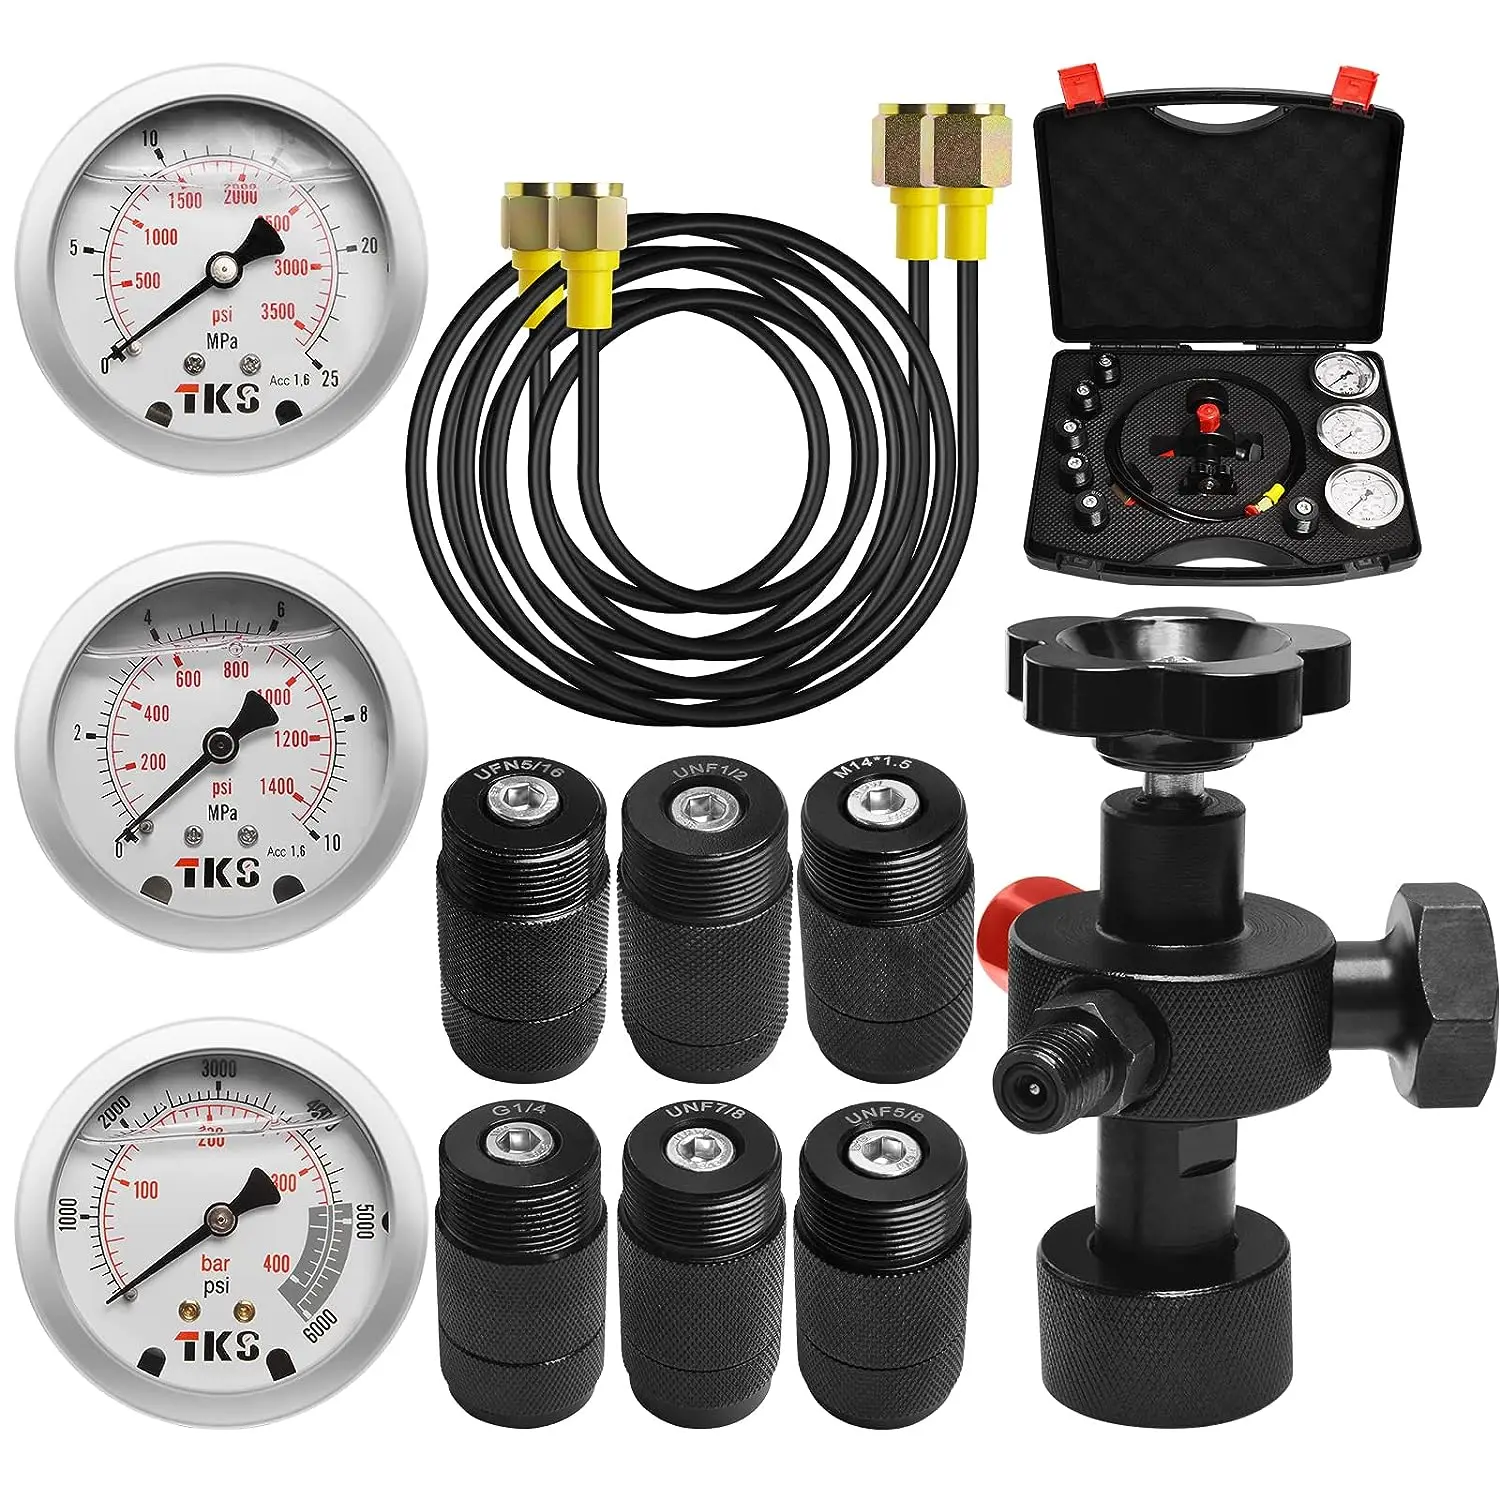 

Nitrogen Accumulator Charging Kit, Nitrogen Fill Kit, Nitrogen Pressure Test System with 7 Couplings, 3 Gauges, and 2 Gas Hose